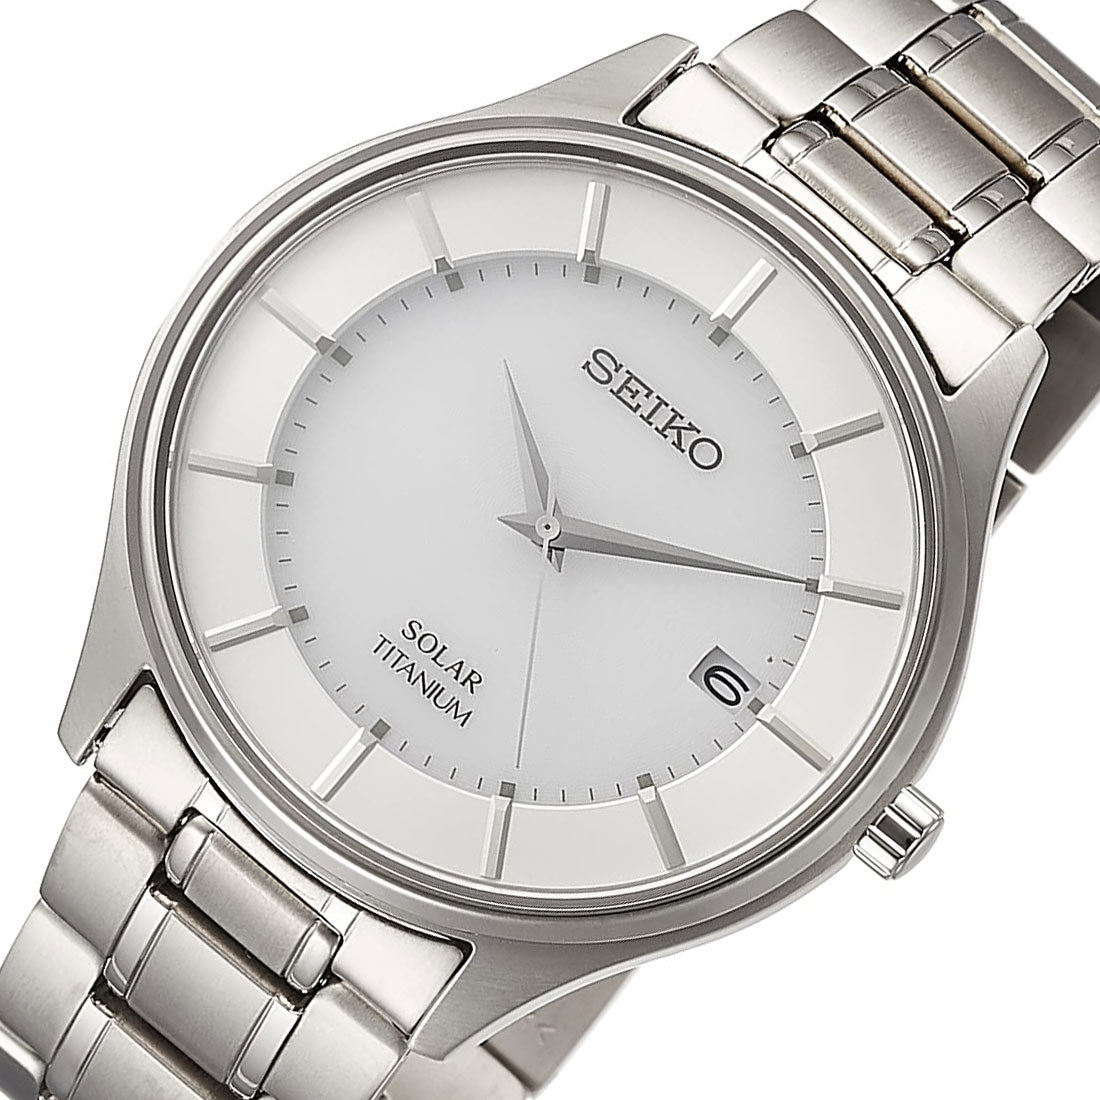 Seiko Selection Titanium JDM Watch SBPX101 -Seiko